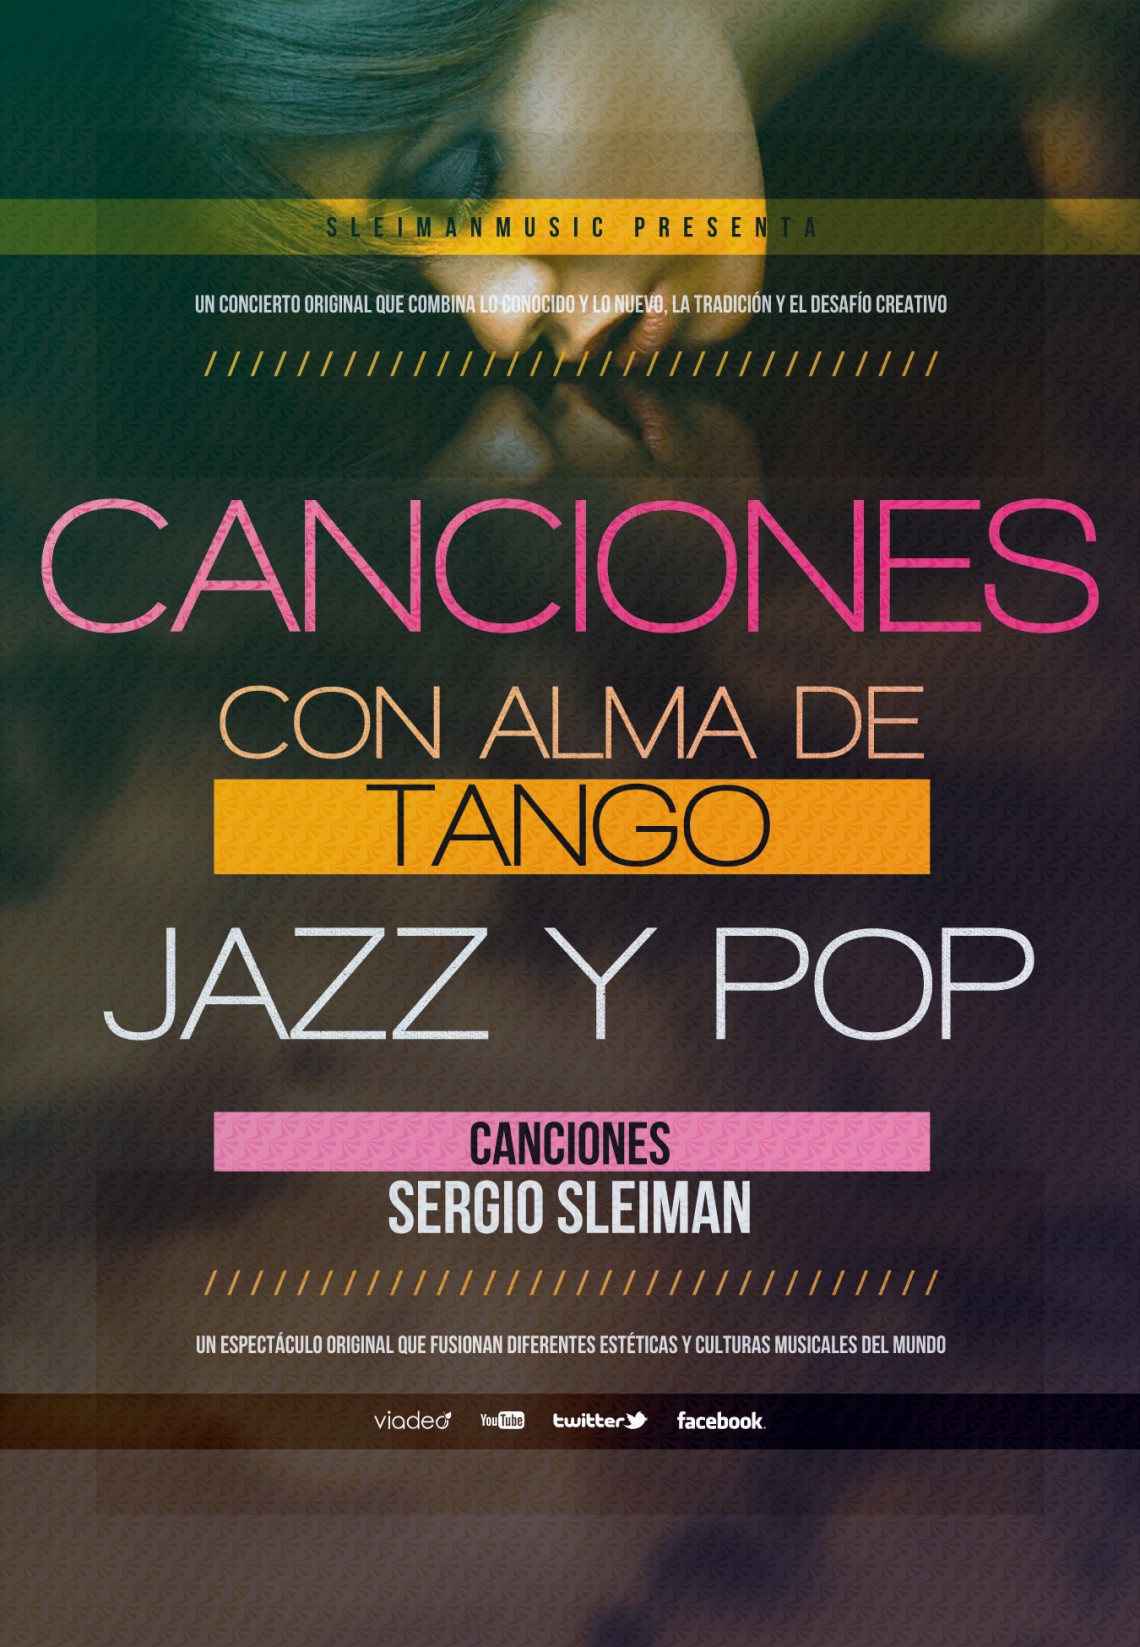 Sergio Sleiman con Alma de Tango Jazz y Pop